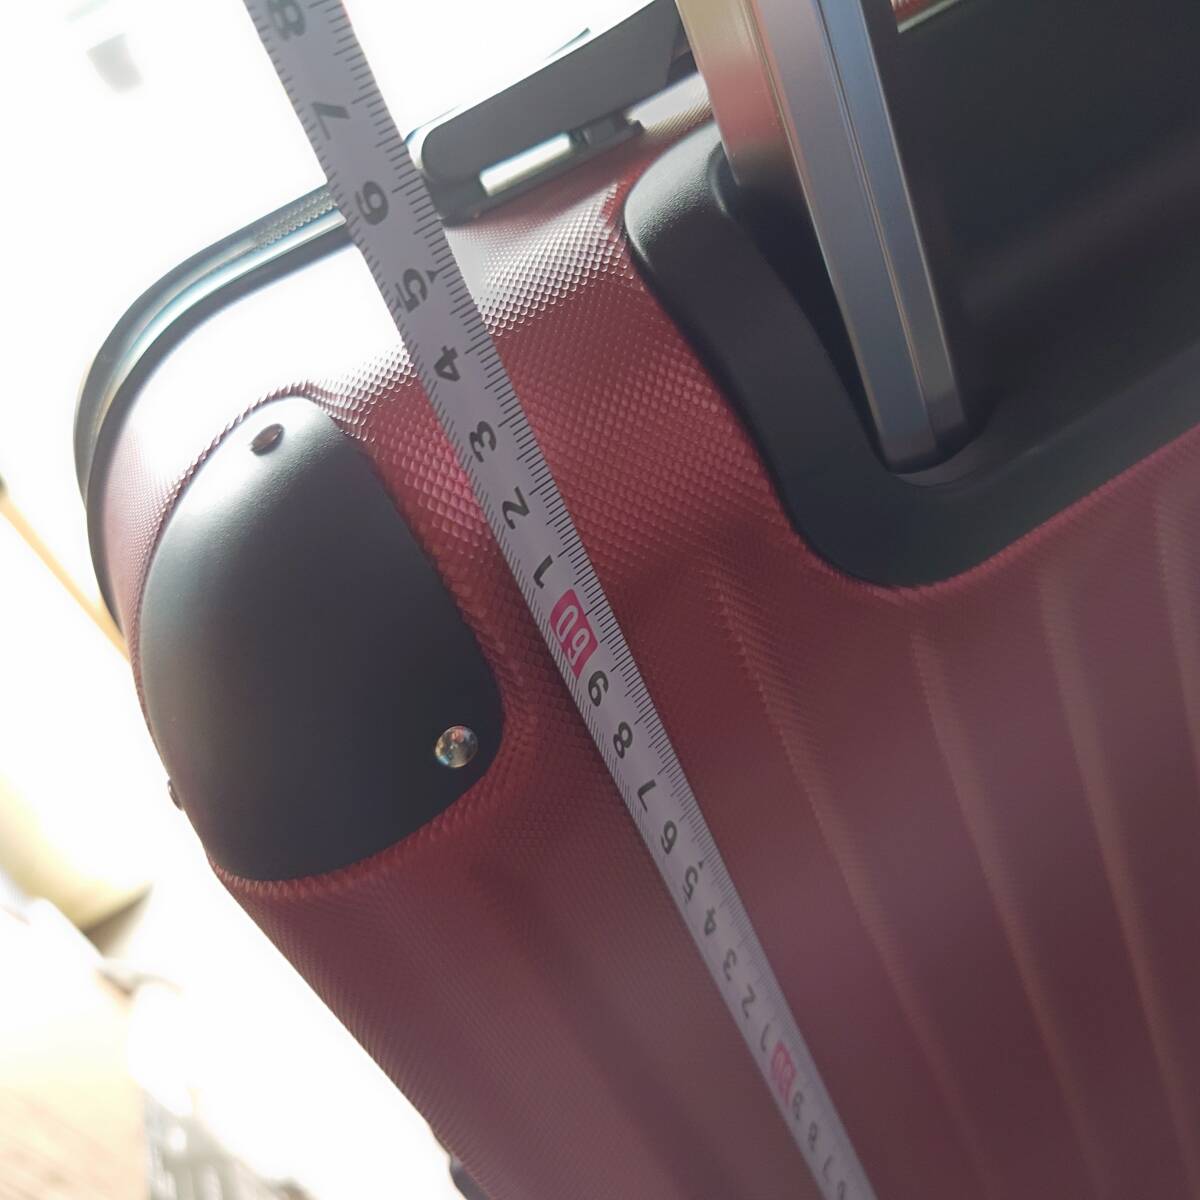  suitcase TSA lock attaching 